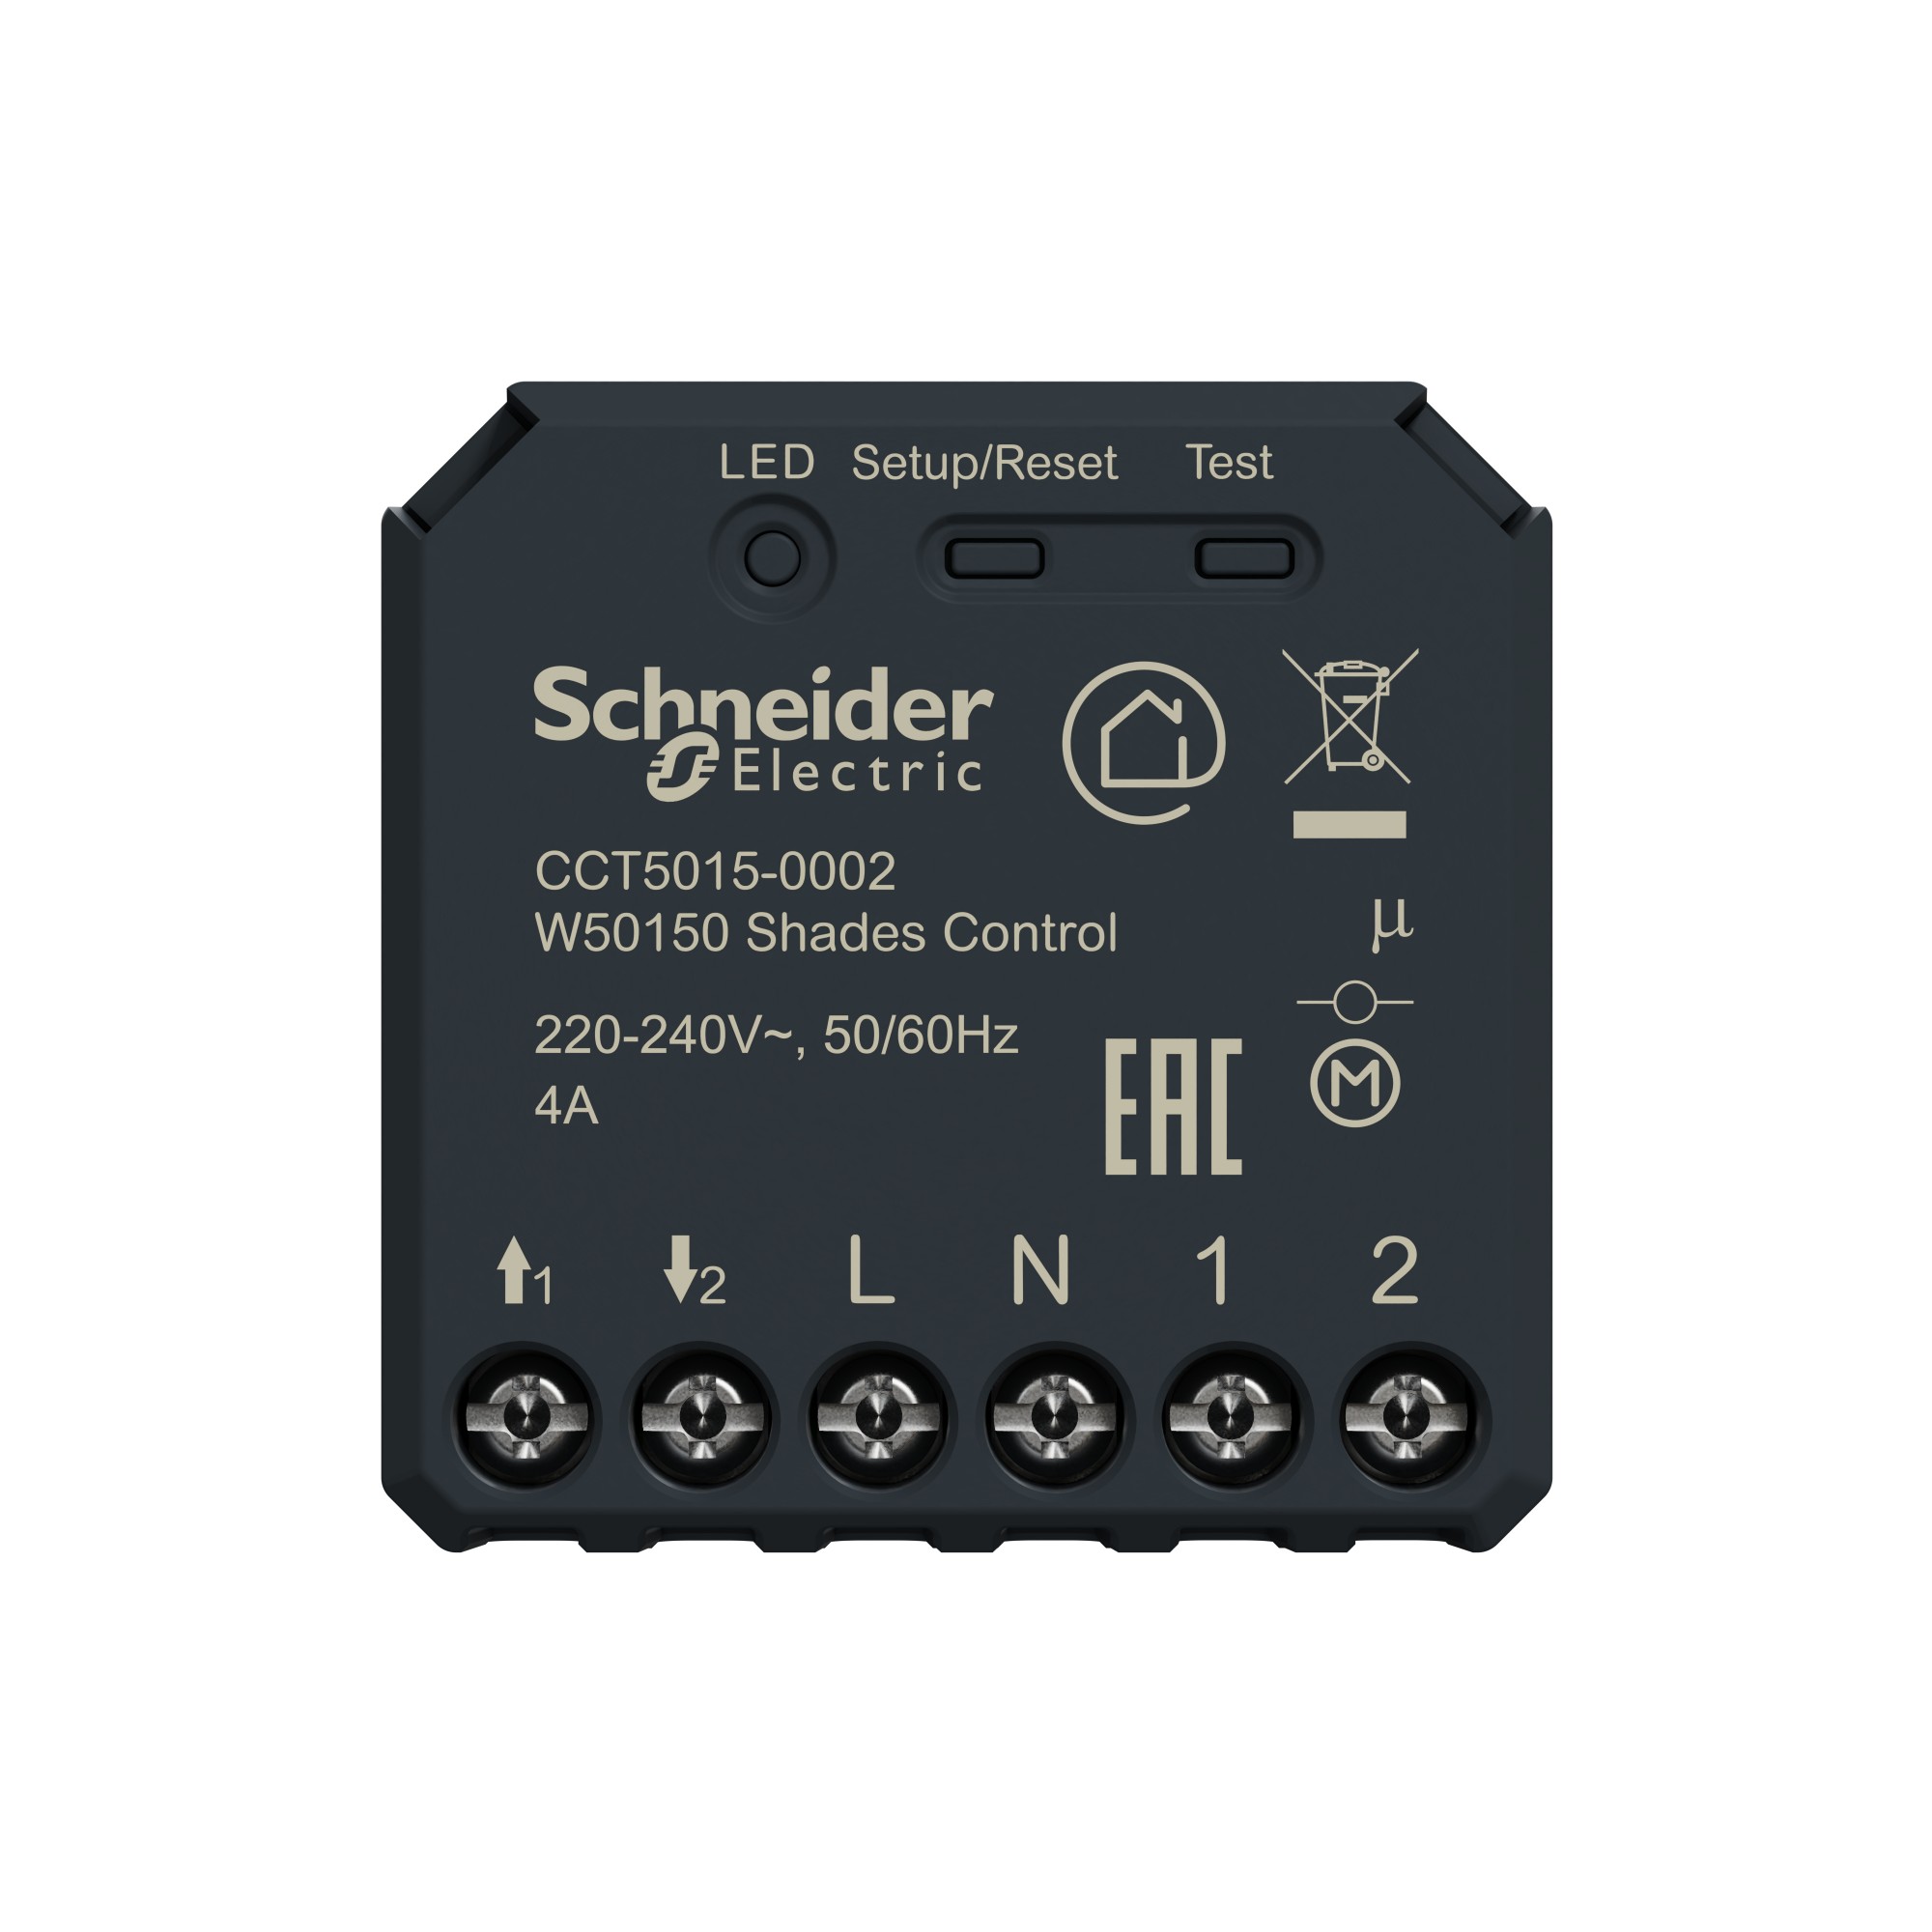 Schneider Electric CCT5015-0002 gateways & controllers